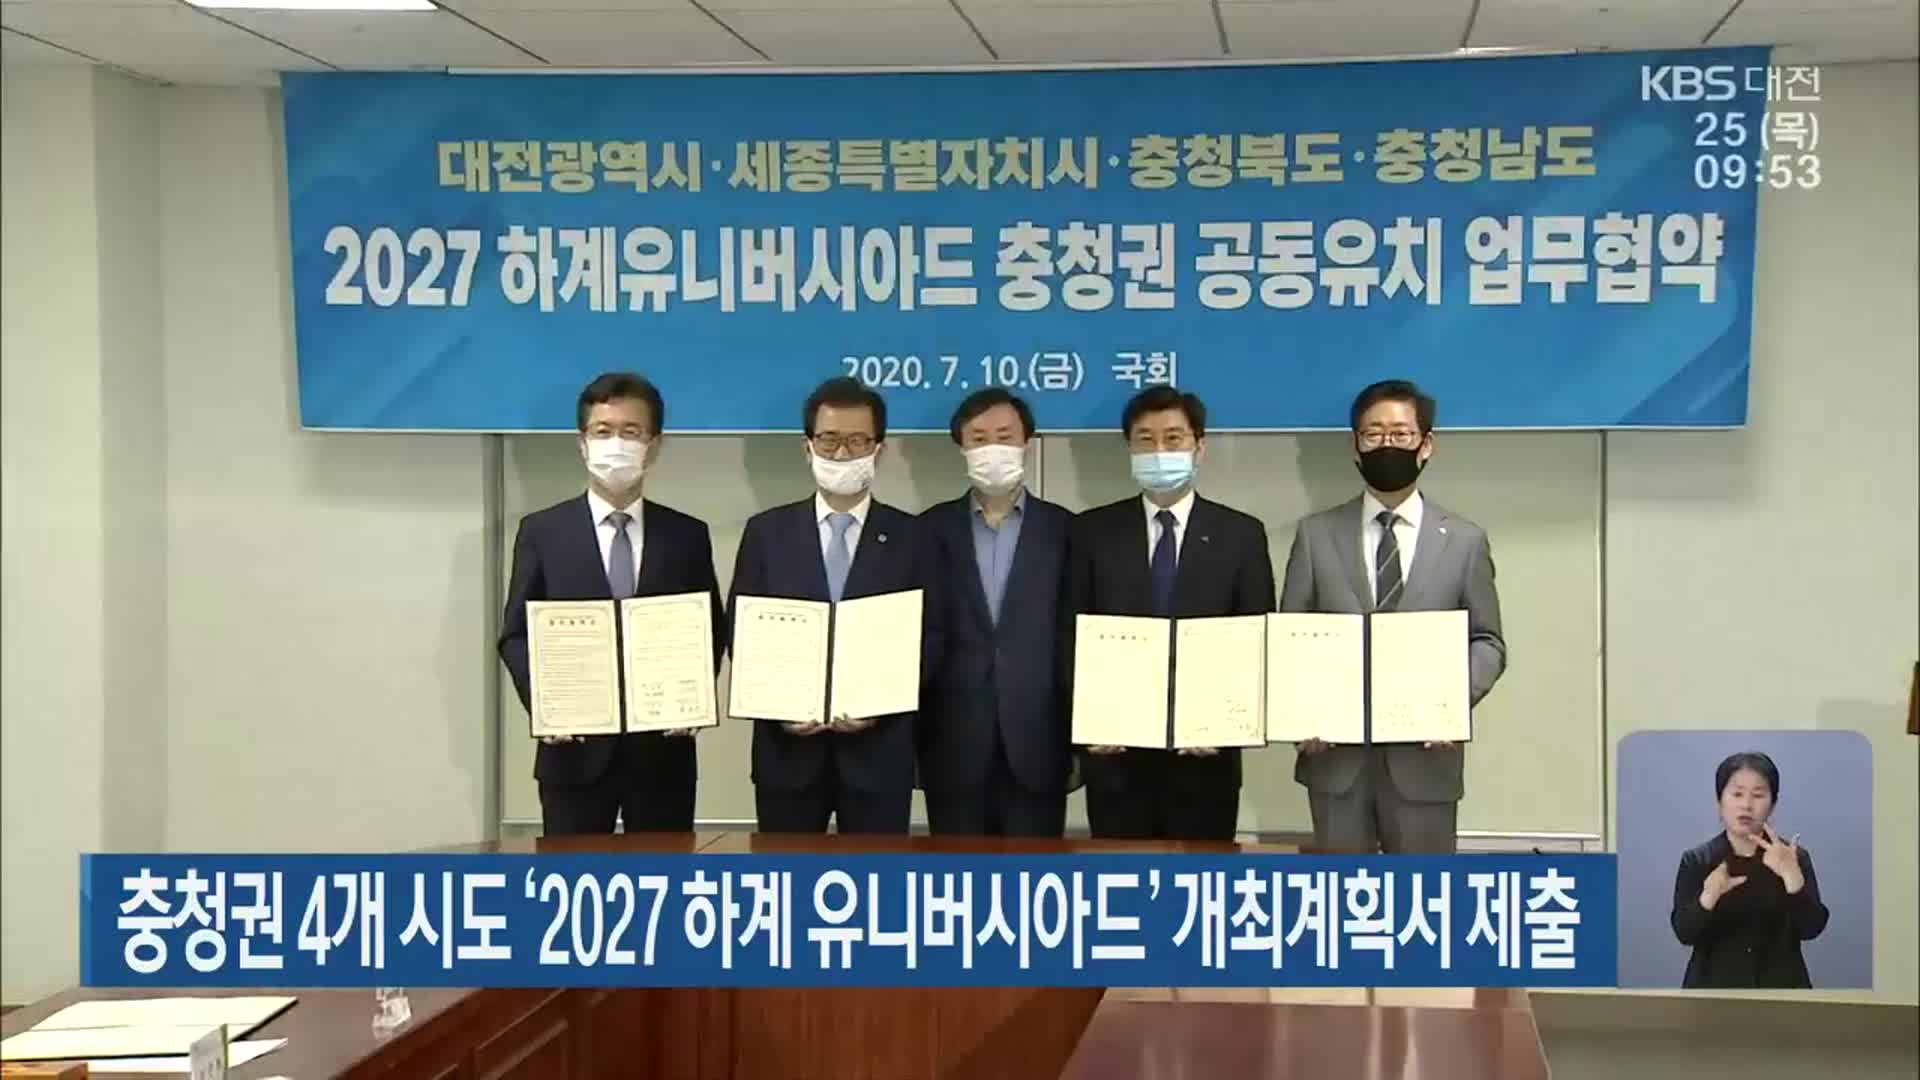 충청권 4개 시도 ‘2027 하계 유니버시아드’ 개최계획서 제출